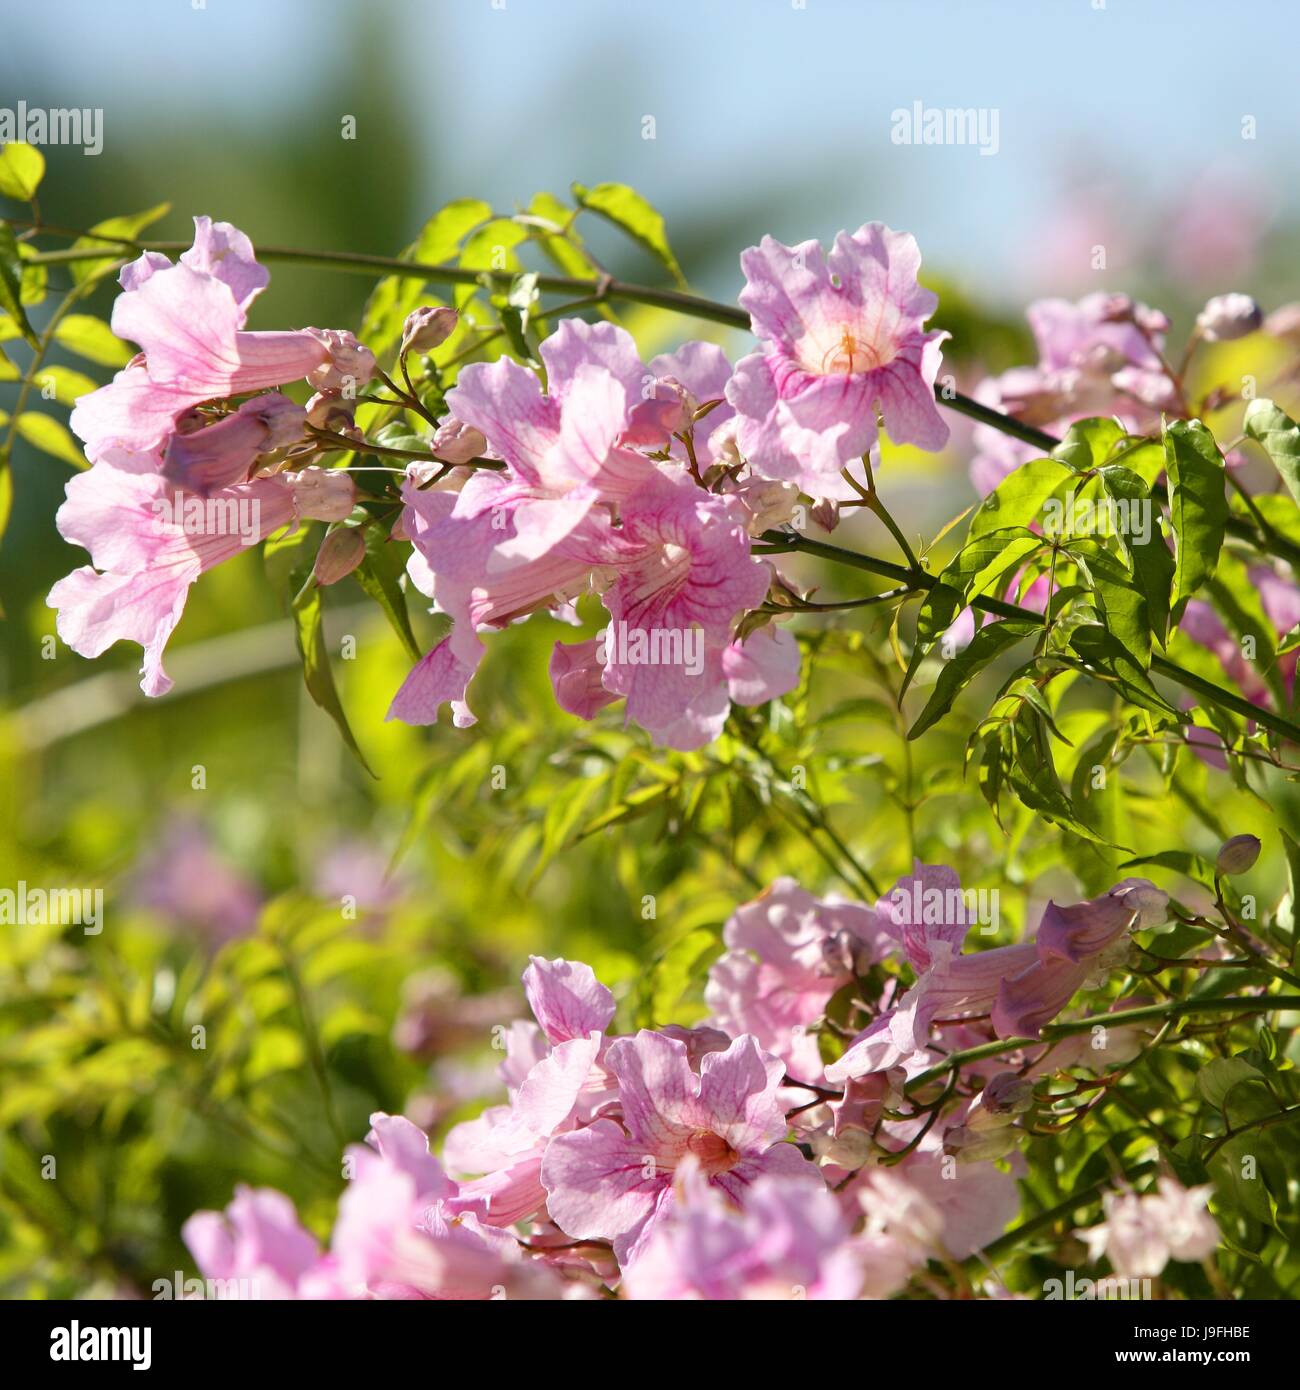 flower, plant, flowers, water, mediterranean, salt water, sea, ocean, pink, Stock Photo